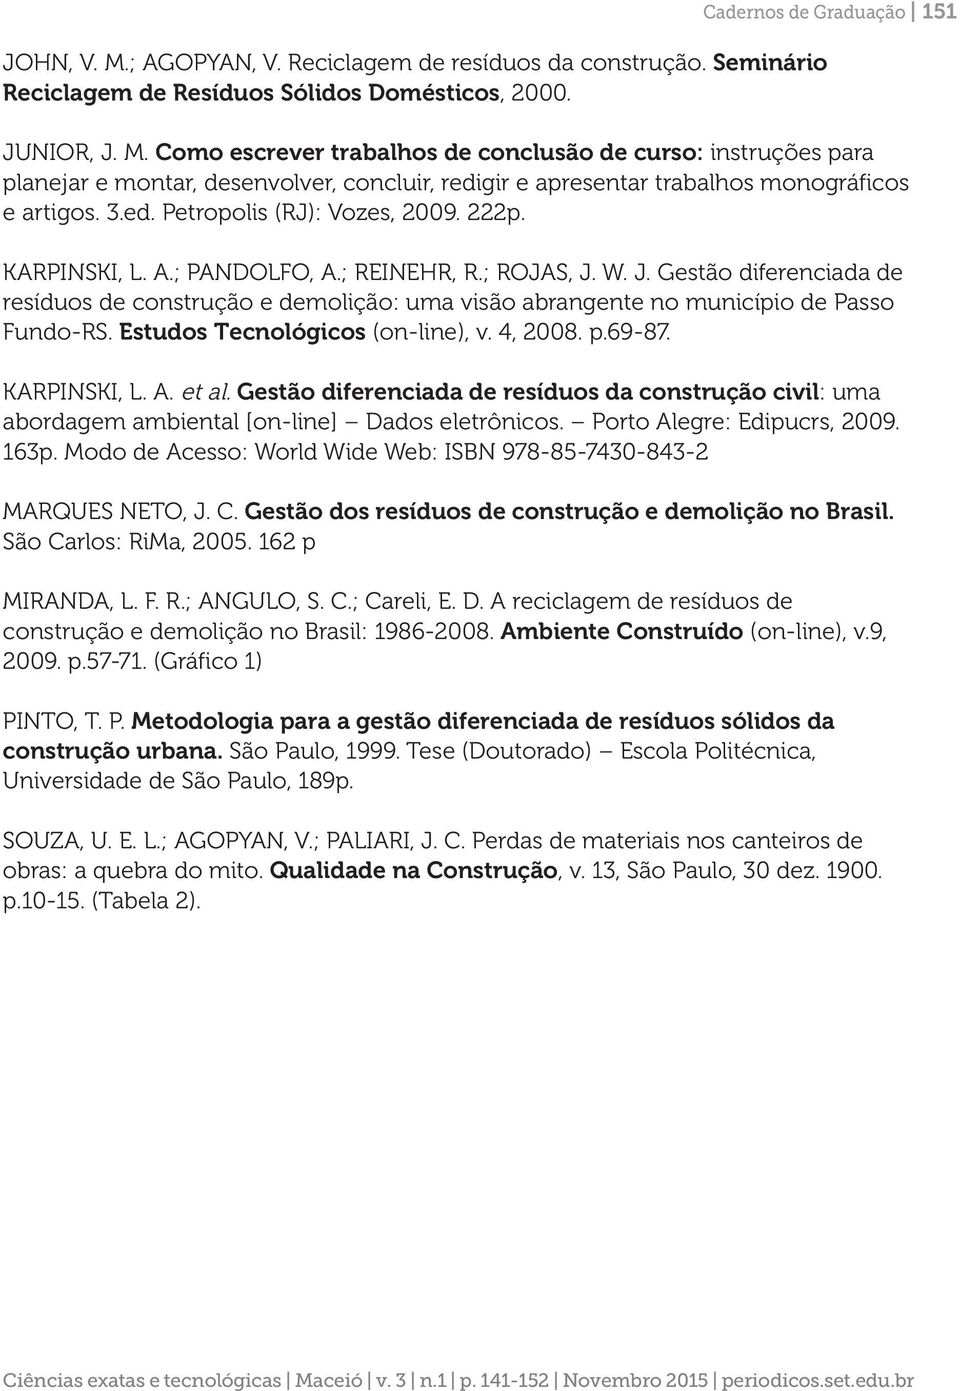 W. J. Gestão diferenciada de resíduos de construção e demolição: uma visão abrangente no município de Passo Fundo-RS. Estudos Tecnológicos (on-line), v. 4, 2008. p.69-87. KARPINSKI, L. A. et al.